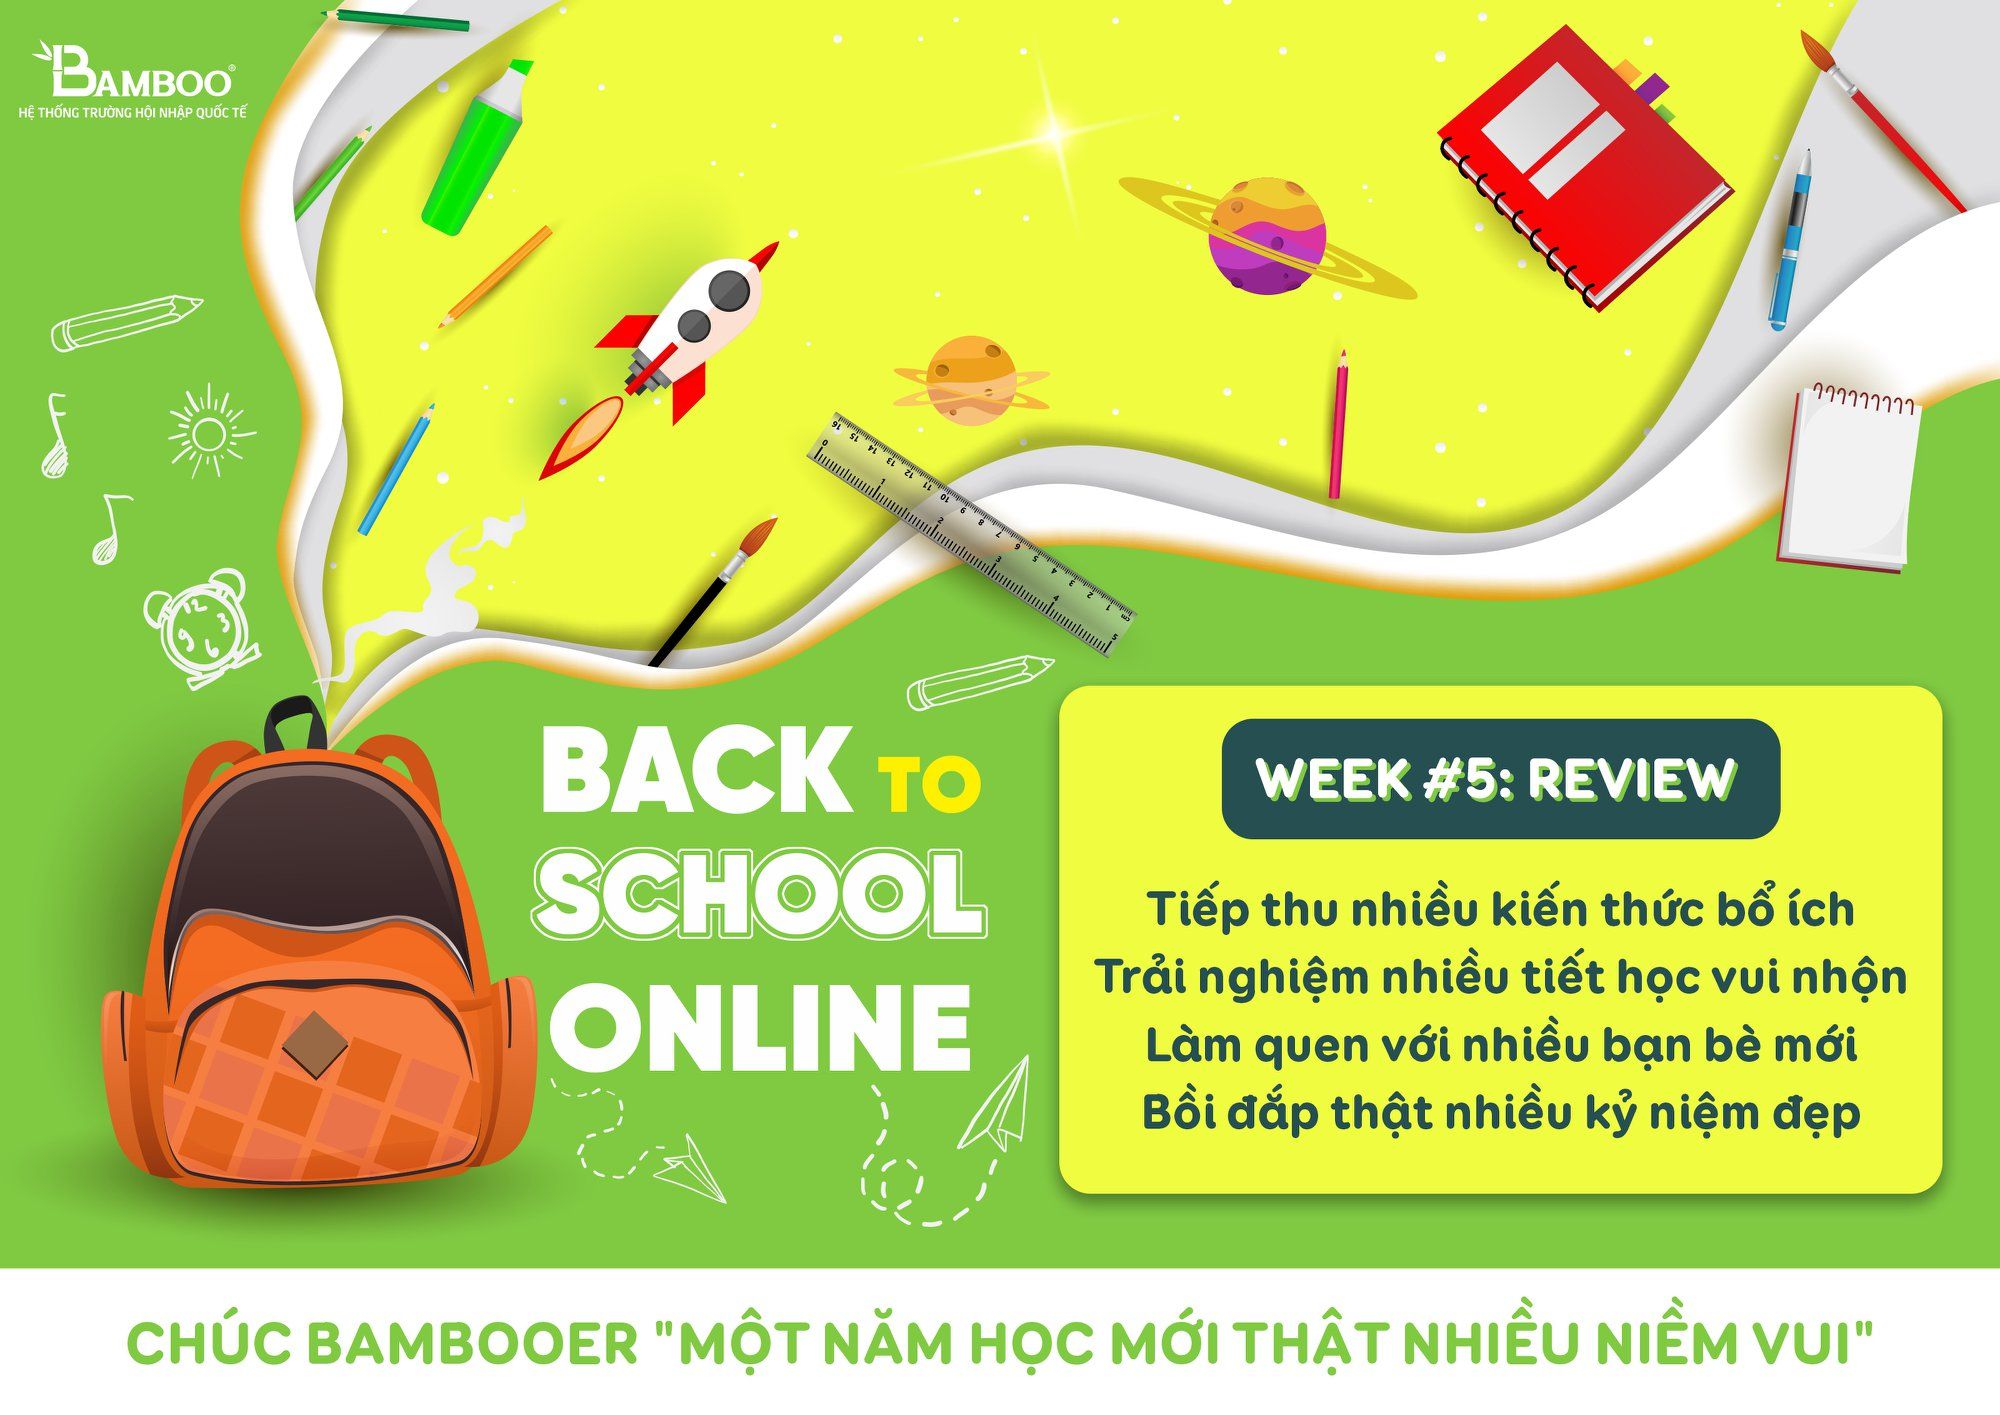 Back to school Online